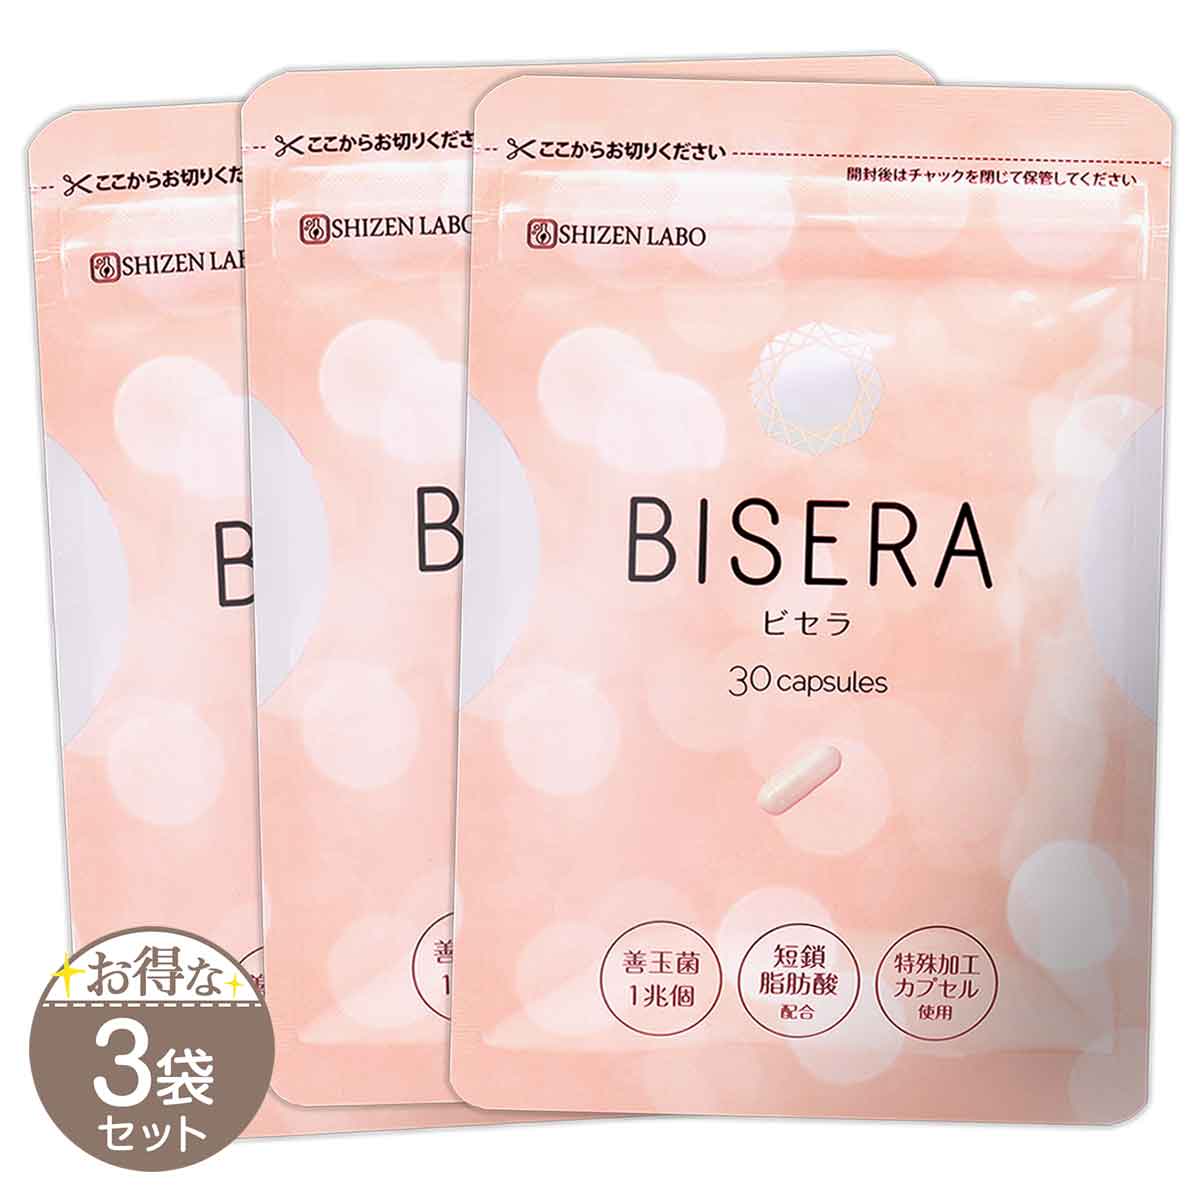 2袋セット 】 ビセラ BISERA 11.25g ( 375mg×30粒 ) ヘルスアップ